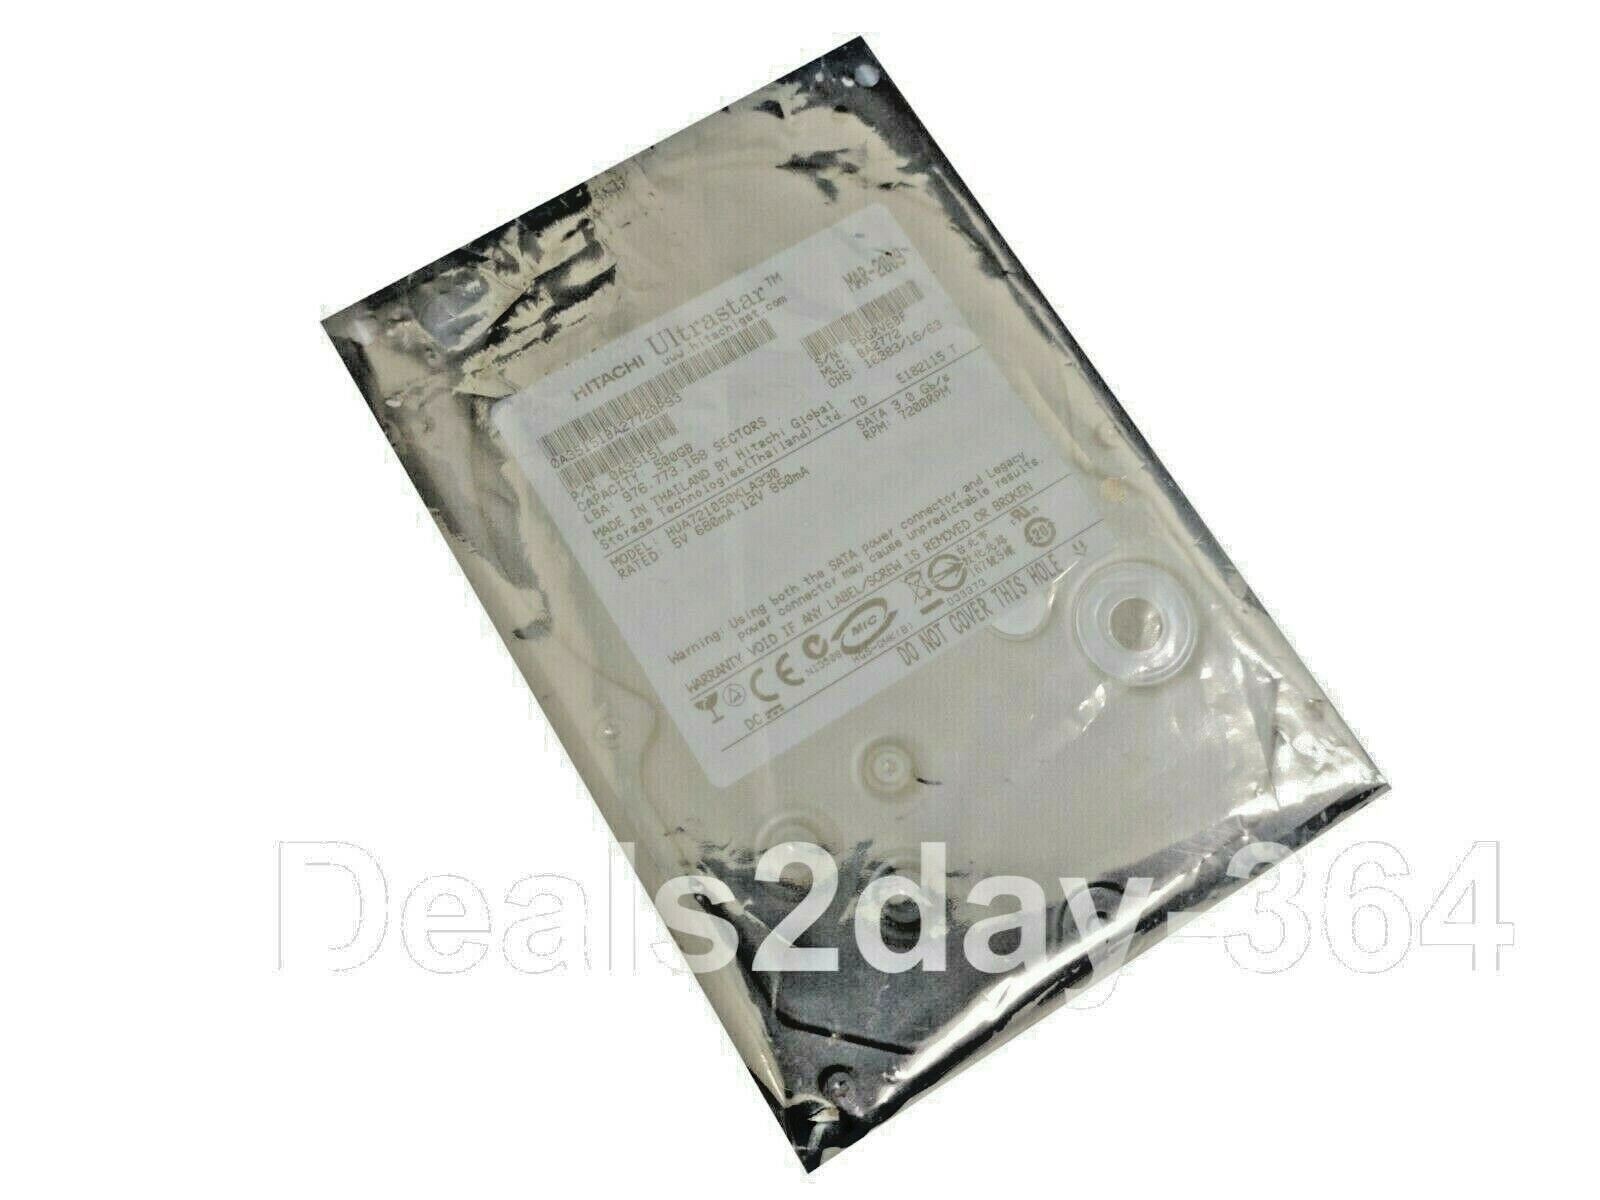 Hgst  500GB 3.5 SATA  Ultrastar A7K1000 HUA721050KLA330 Hard Drive 